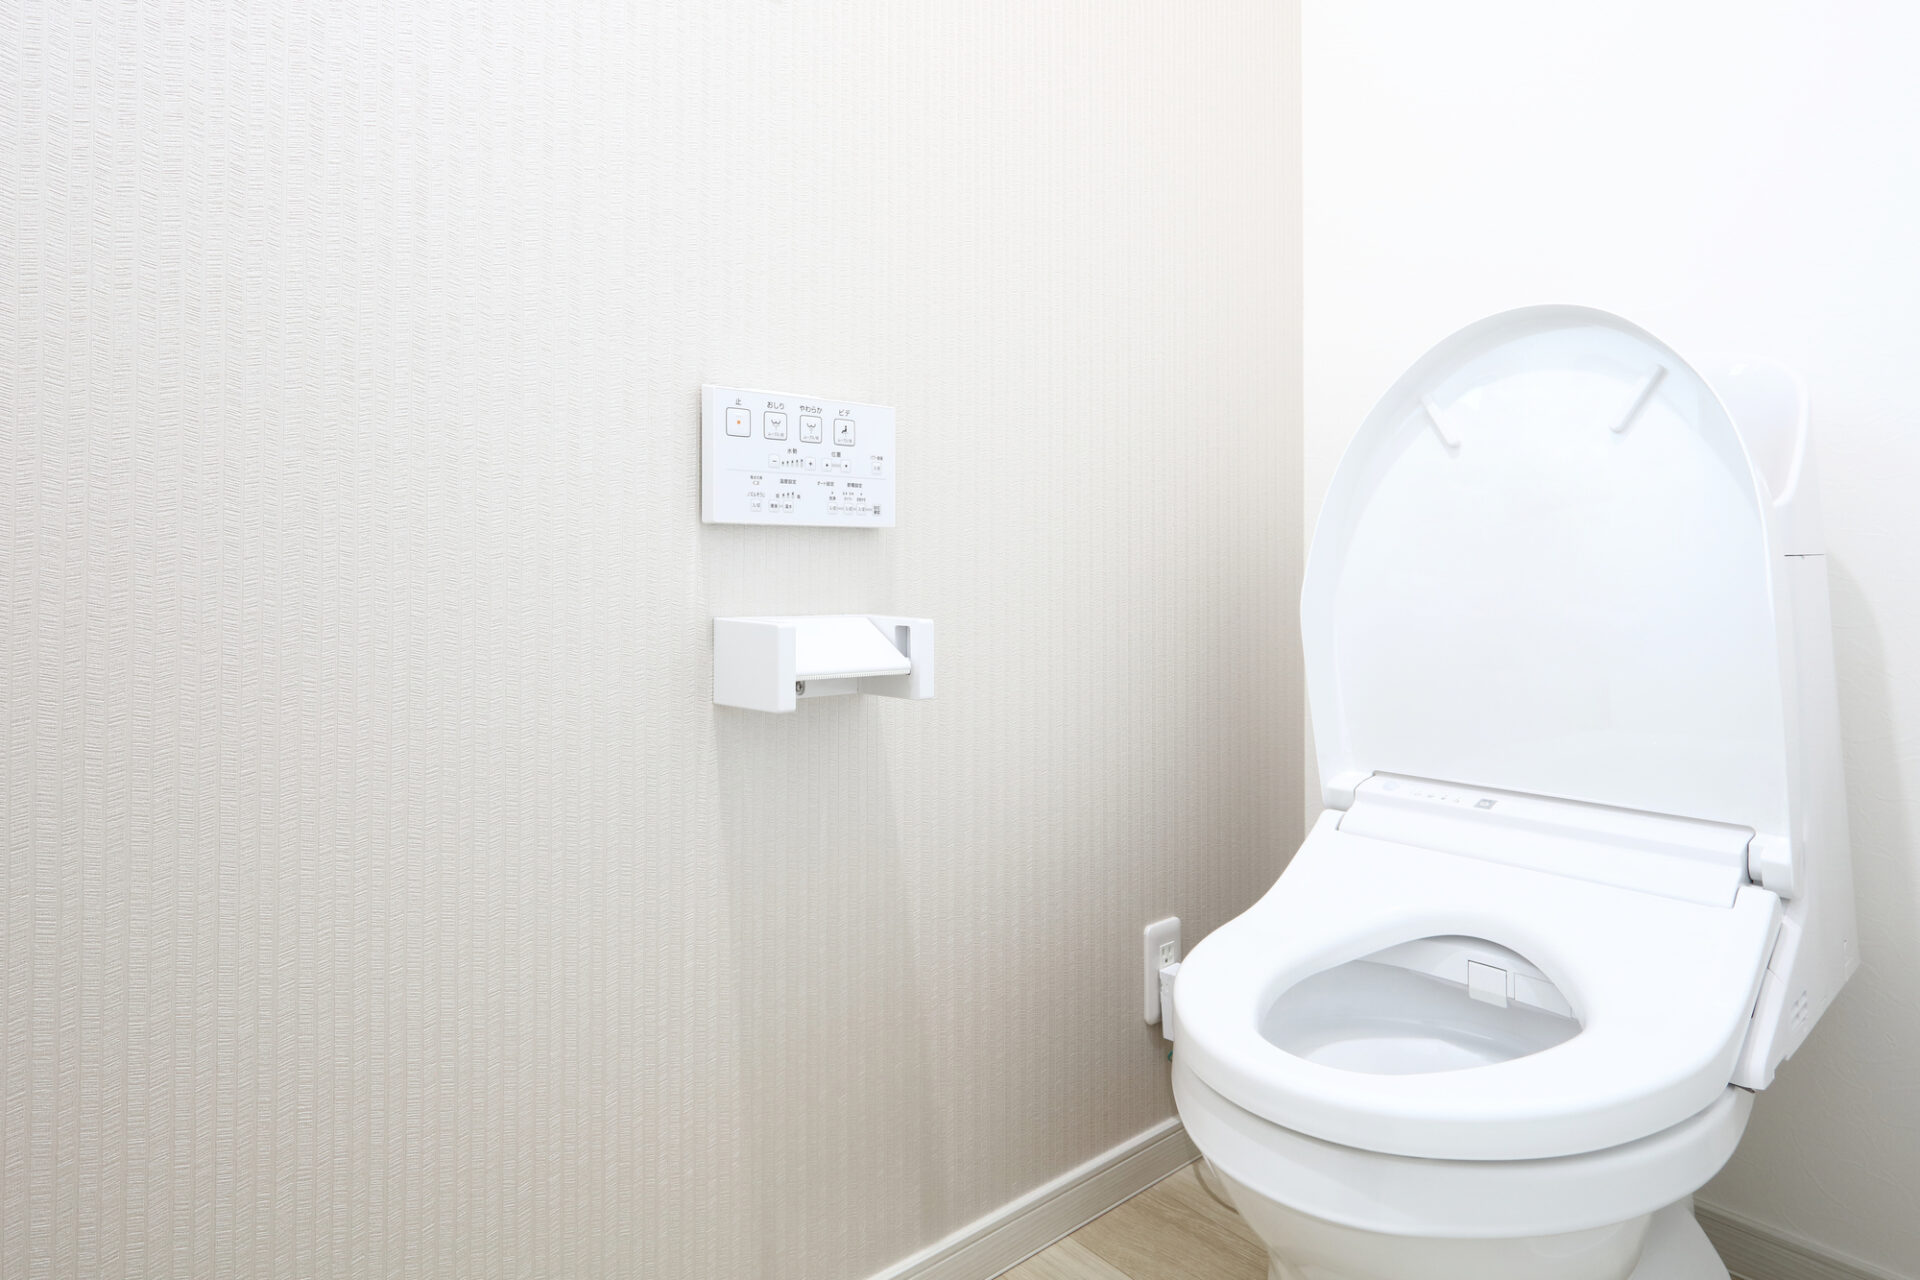 【トラブル対処法】簡易水栓トイレつまりの原因と解決方法を徹底解説